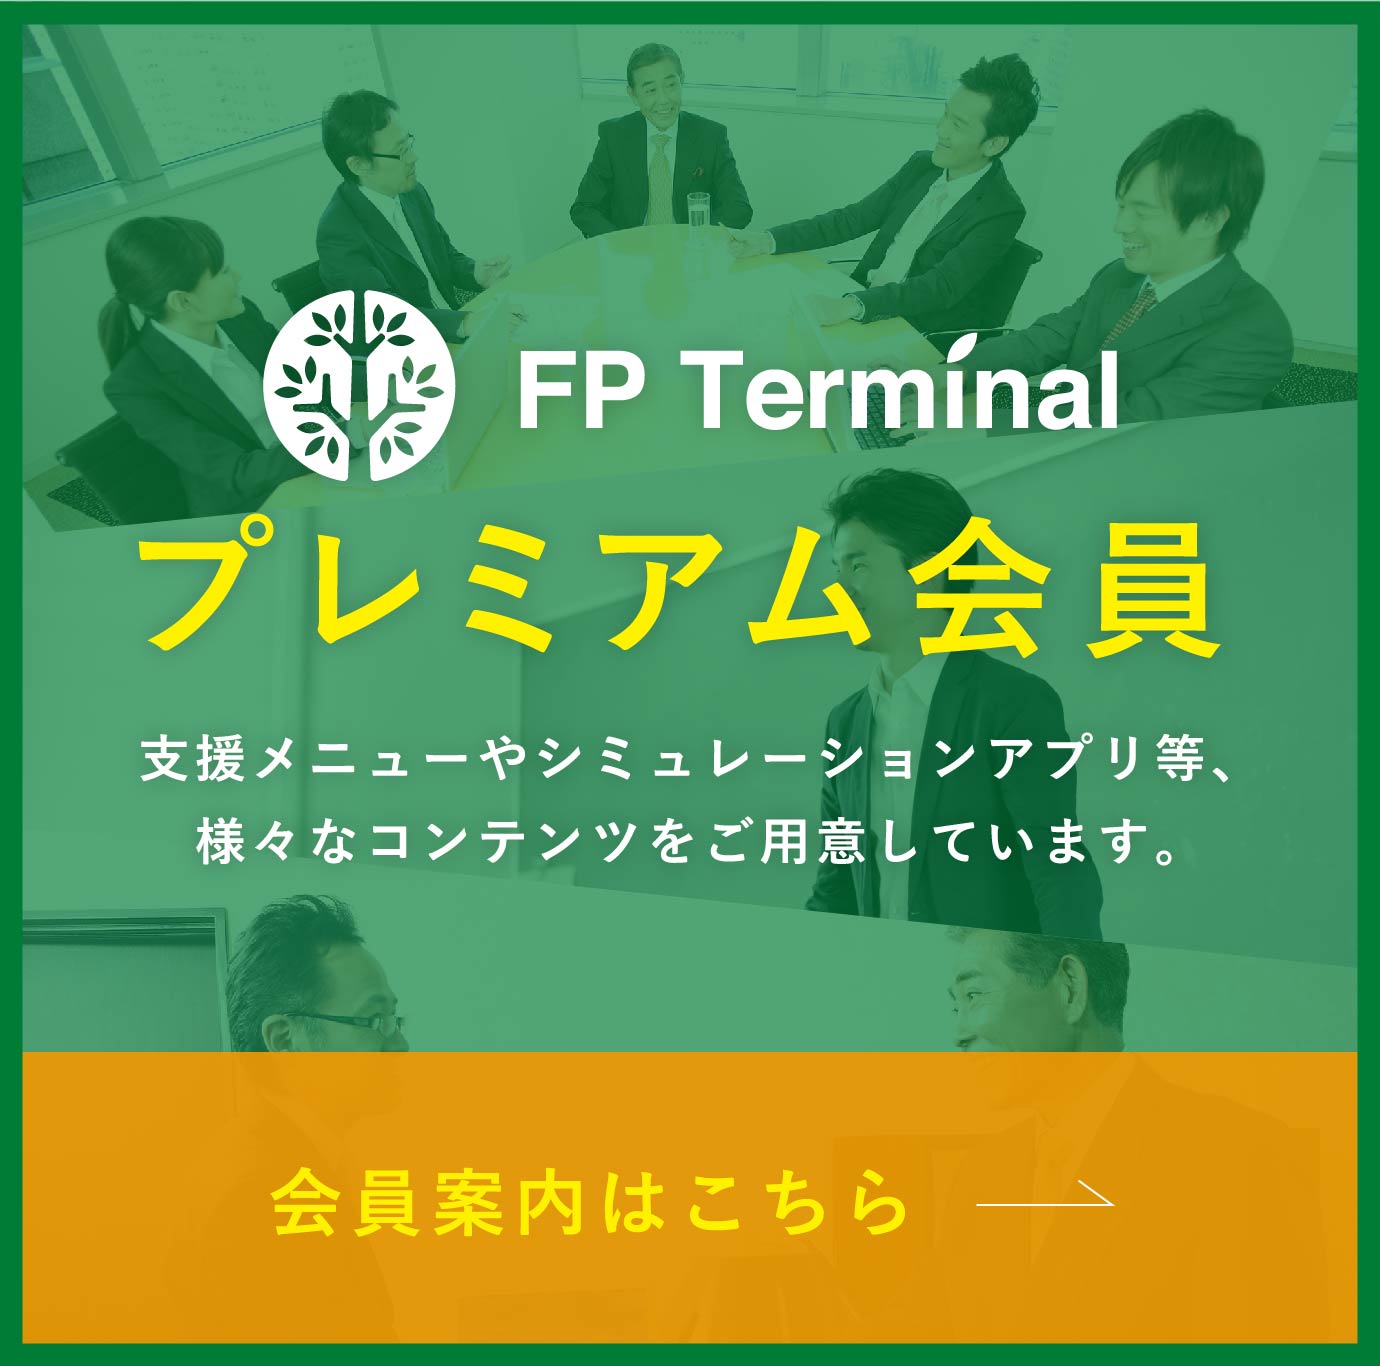 FP Terminal プレミアム会員